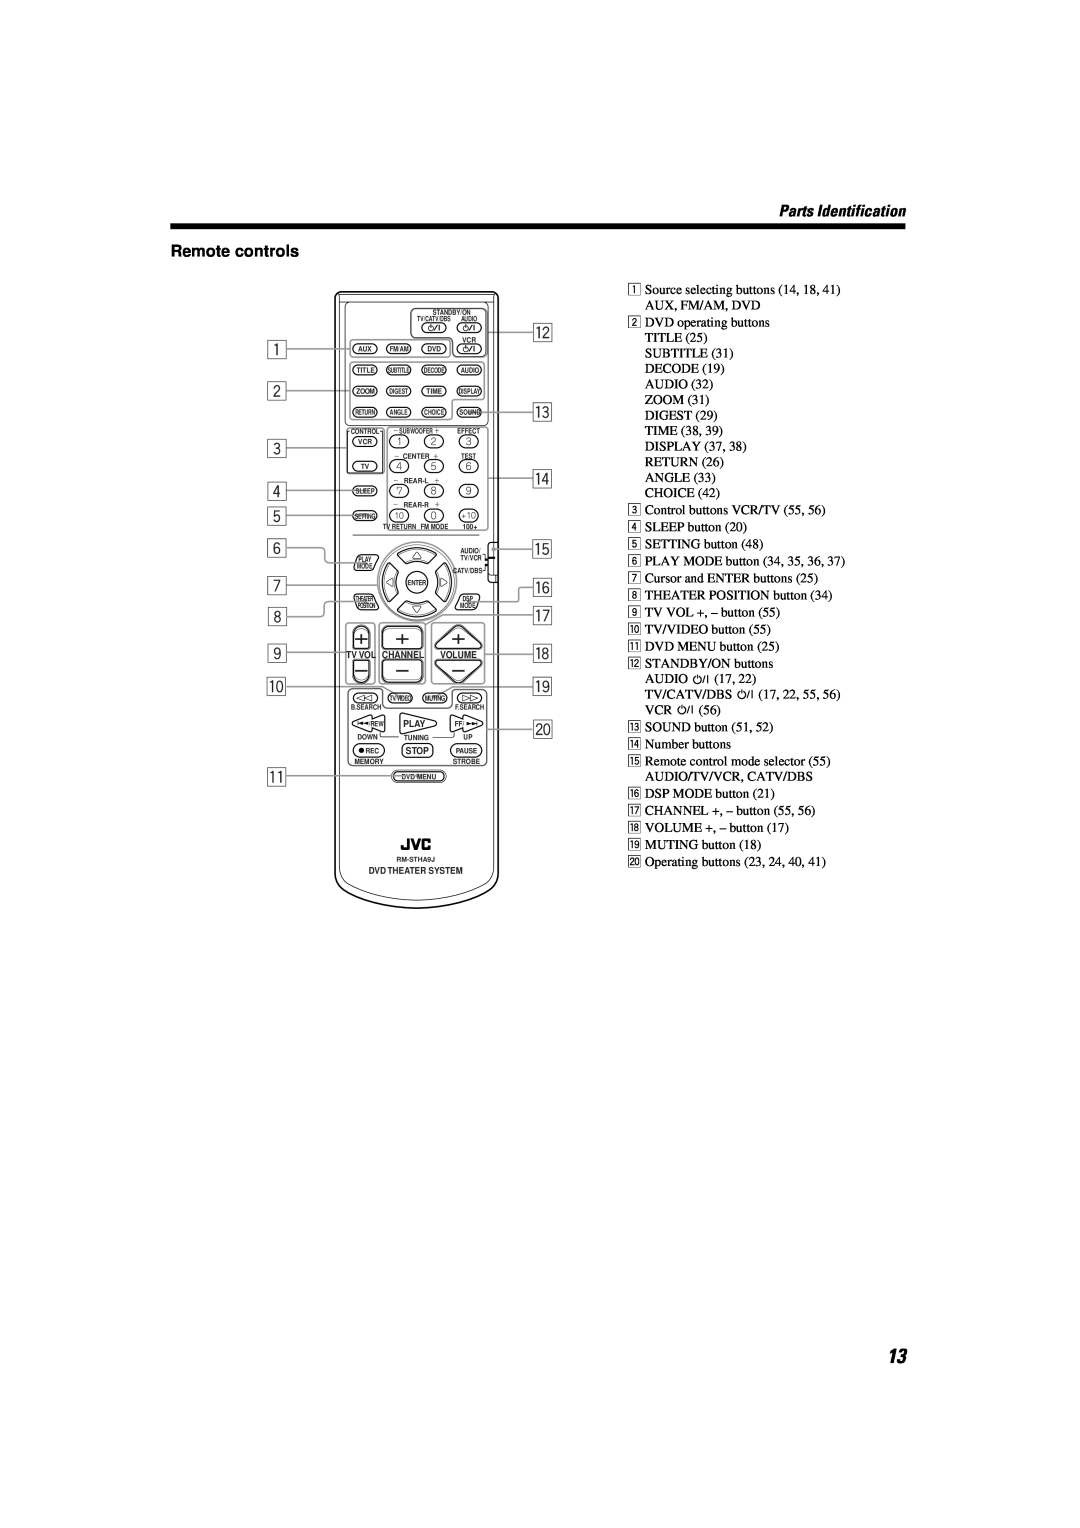 JVC TH-A9 manual Remote controls, Parts Identification, English English English English English English 